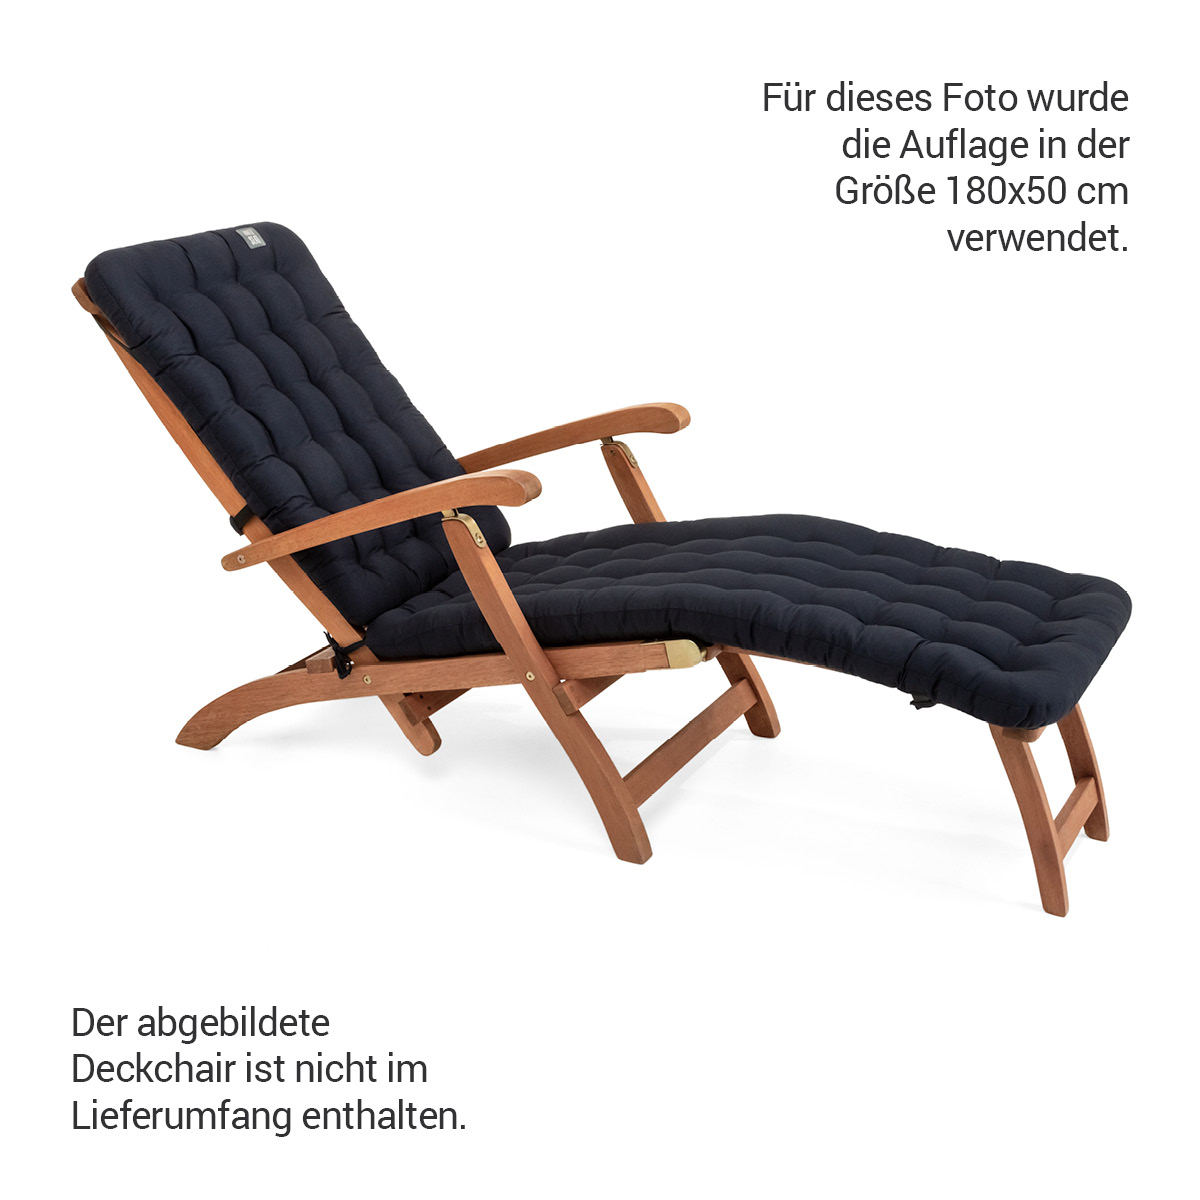 Premium HAVE A SEAT Living Auflage in Marine-Blau für Deckchair mit Luxus-Polsterung 8 cm Dick | bequem, orthopädisch, passend für Relaxstühle